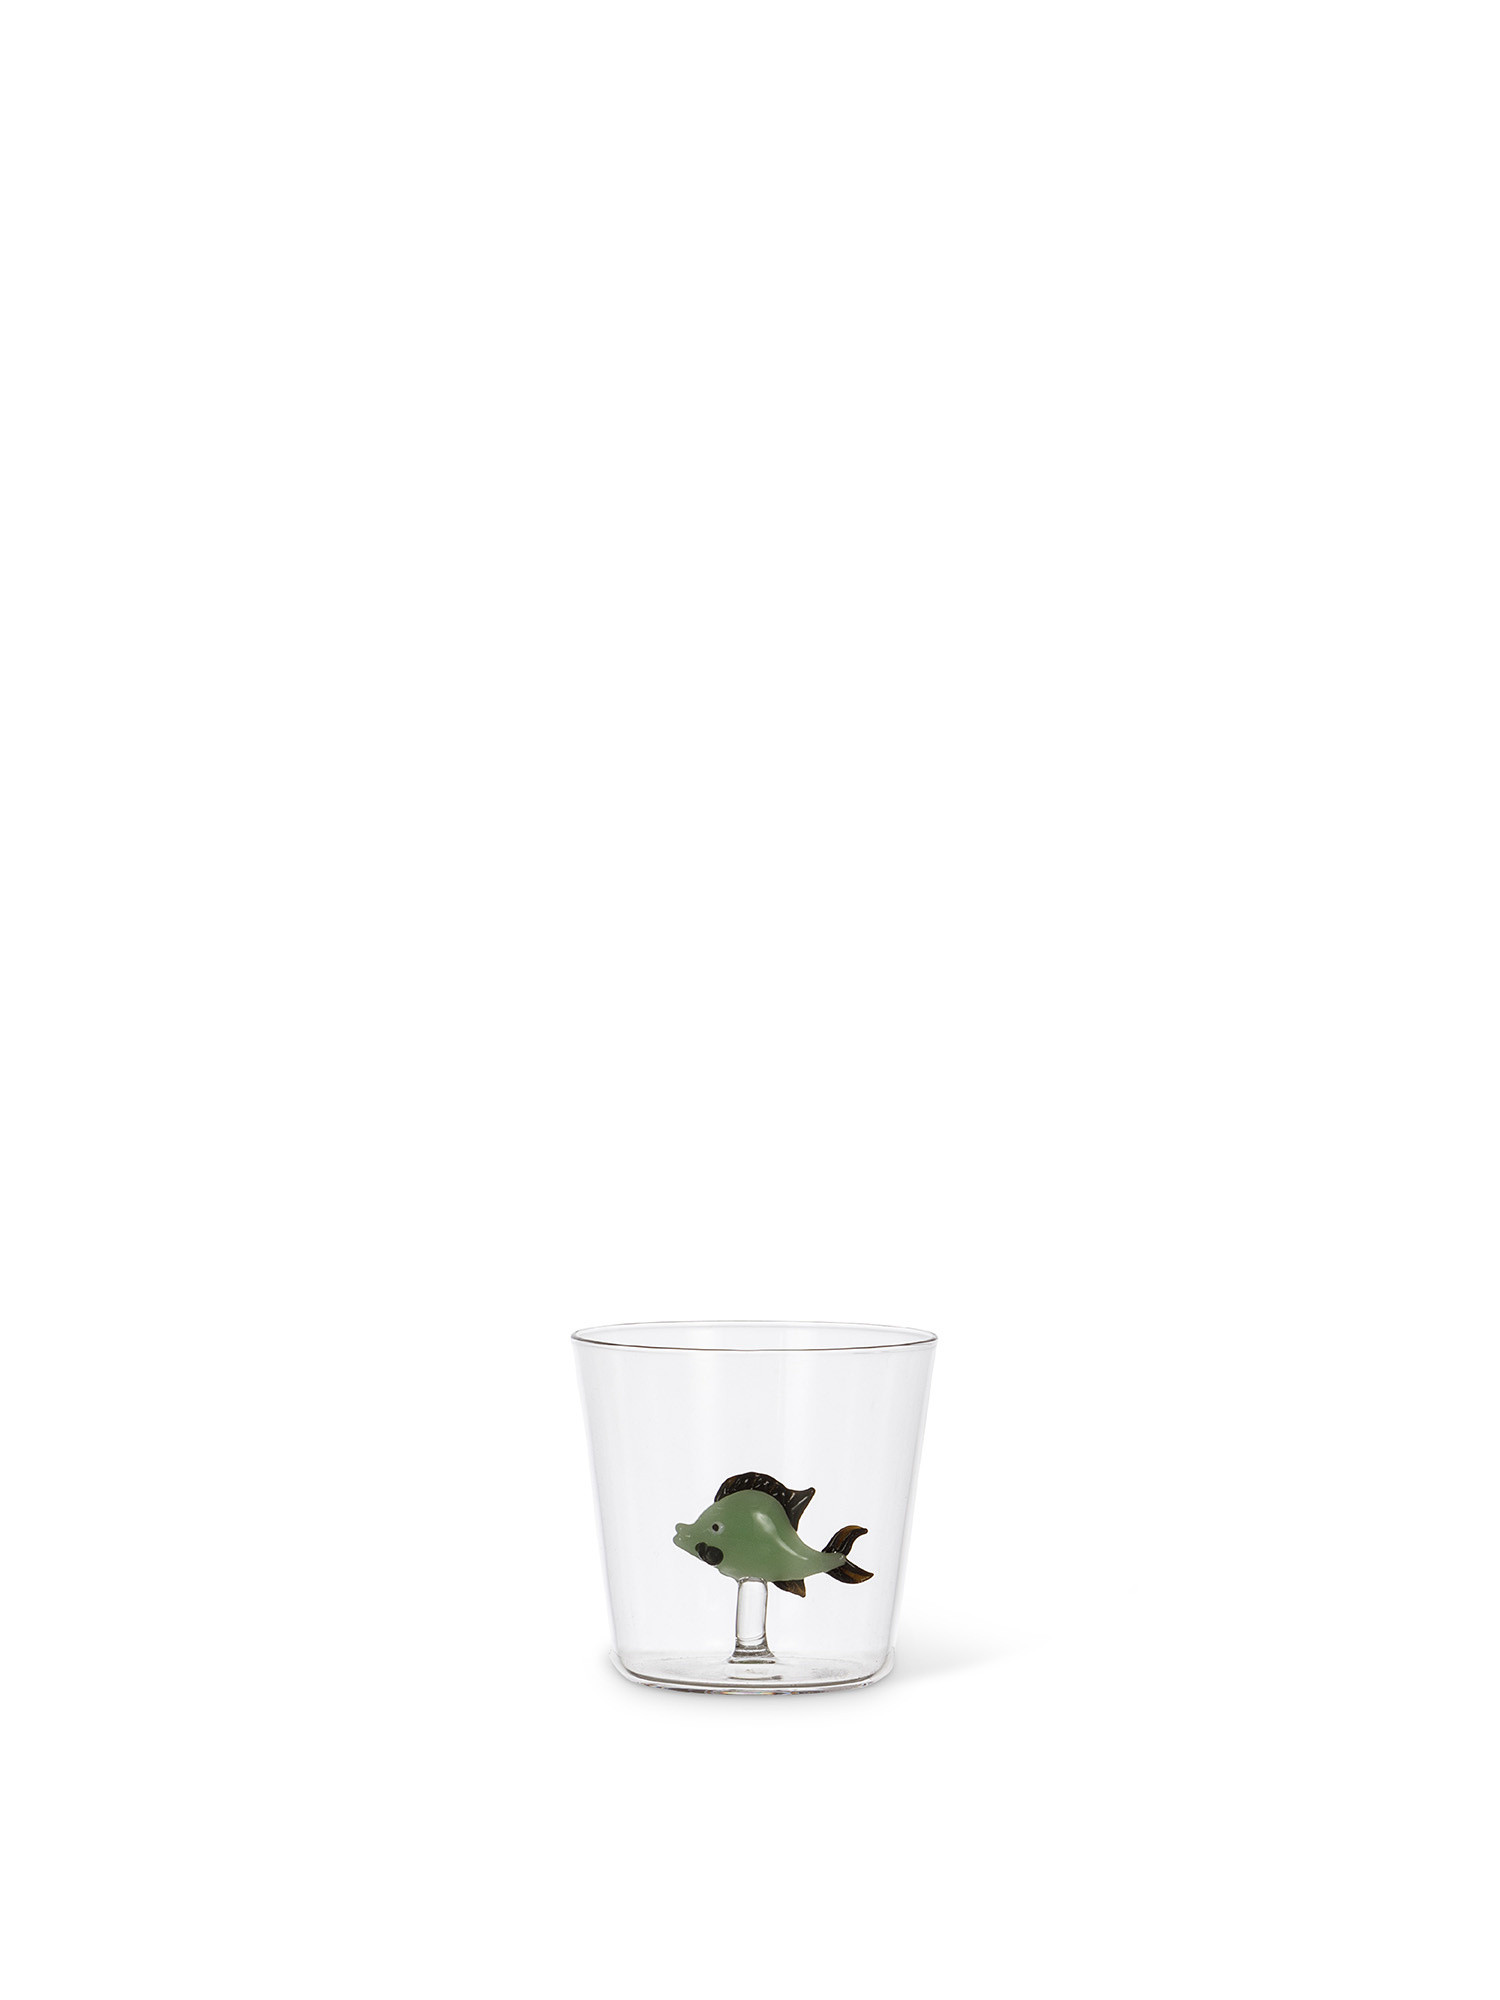 Bicchiere in vetro dettaglio pesce verde, Trasparente, large image number 0